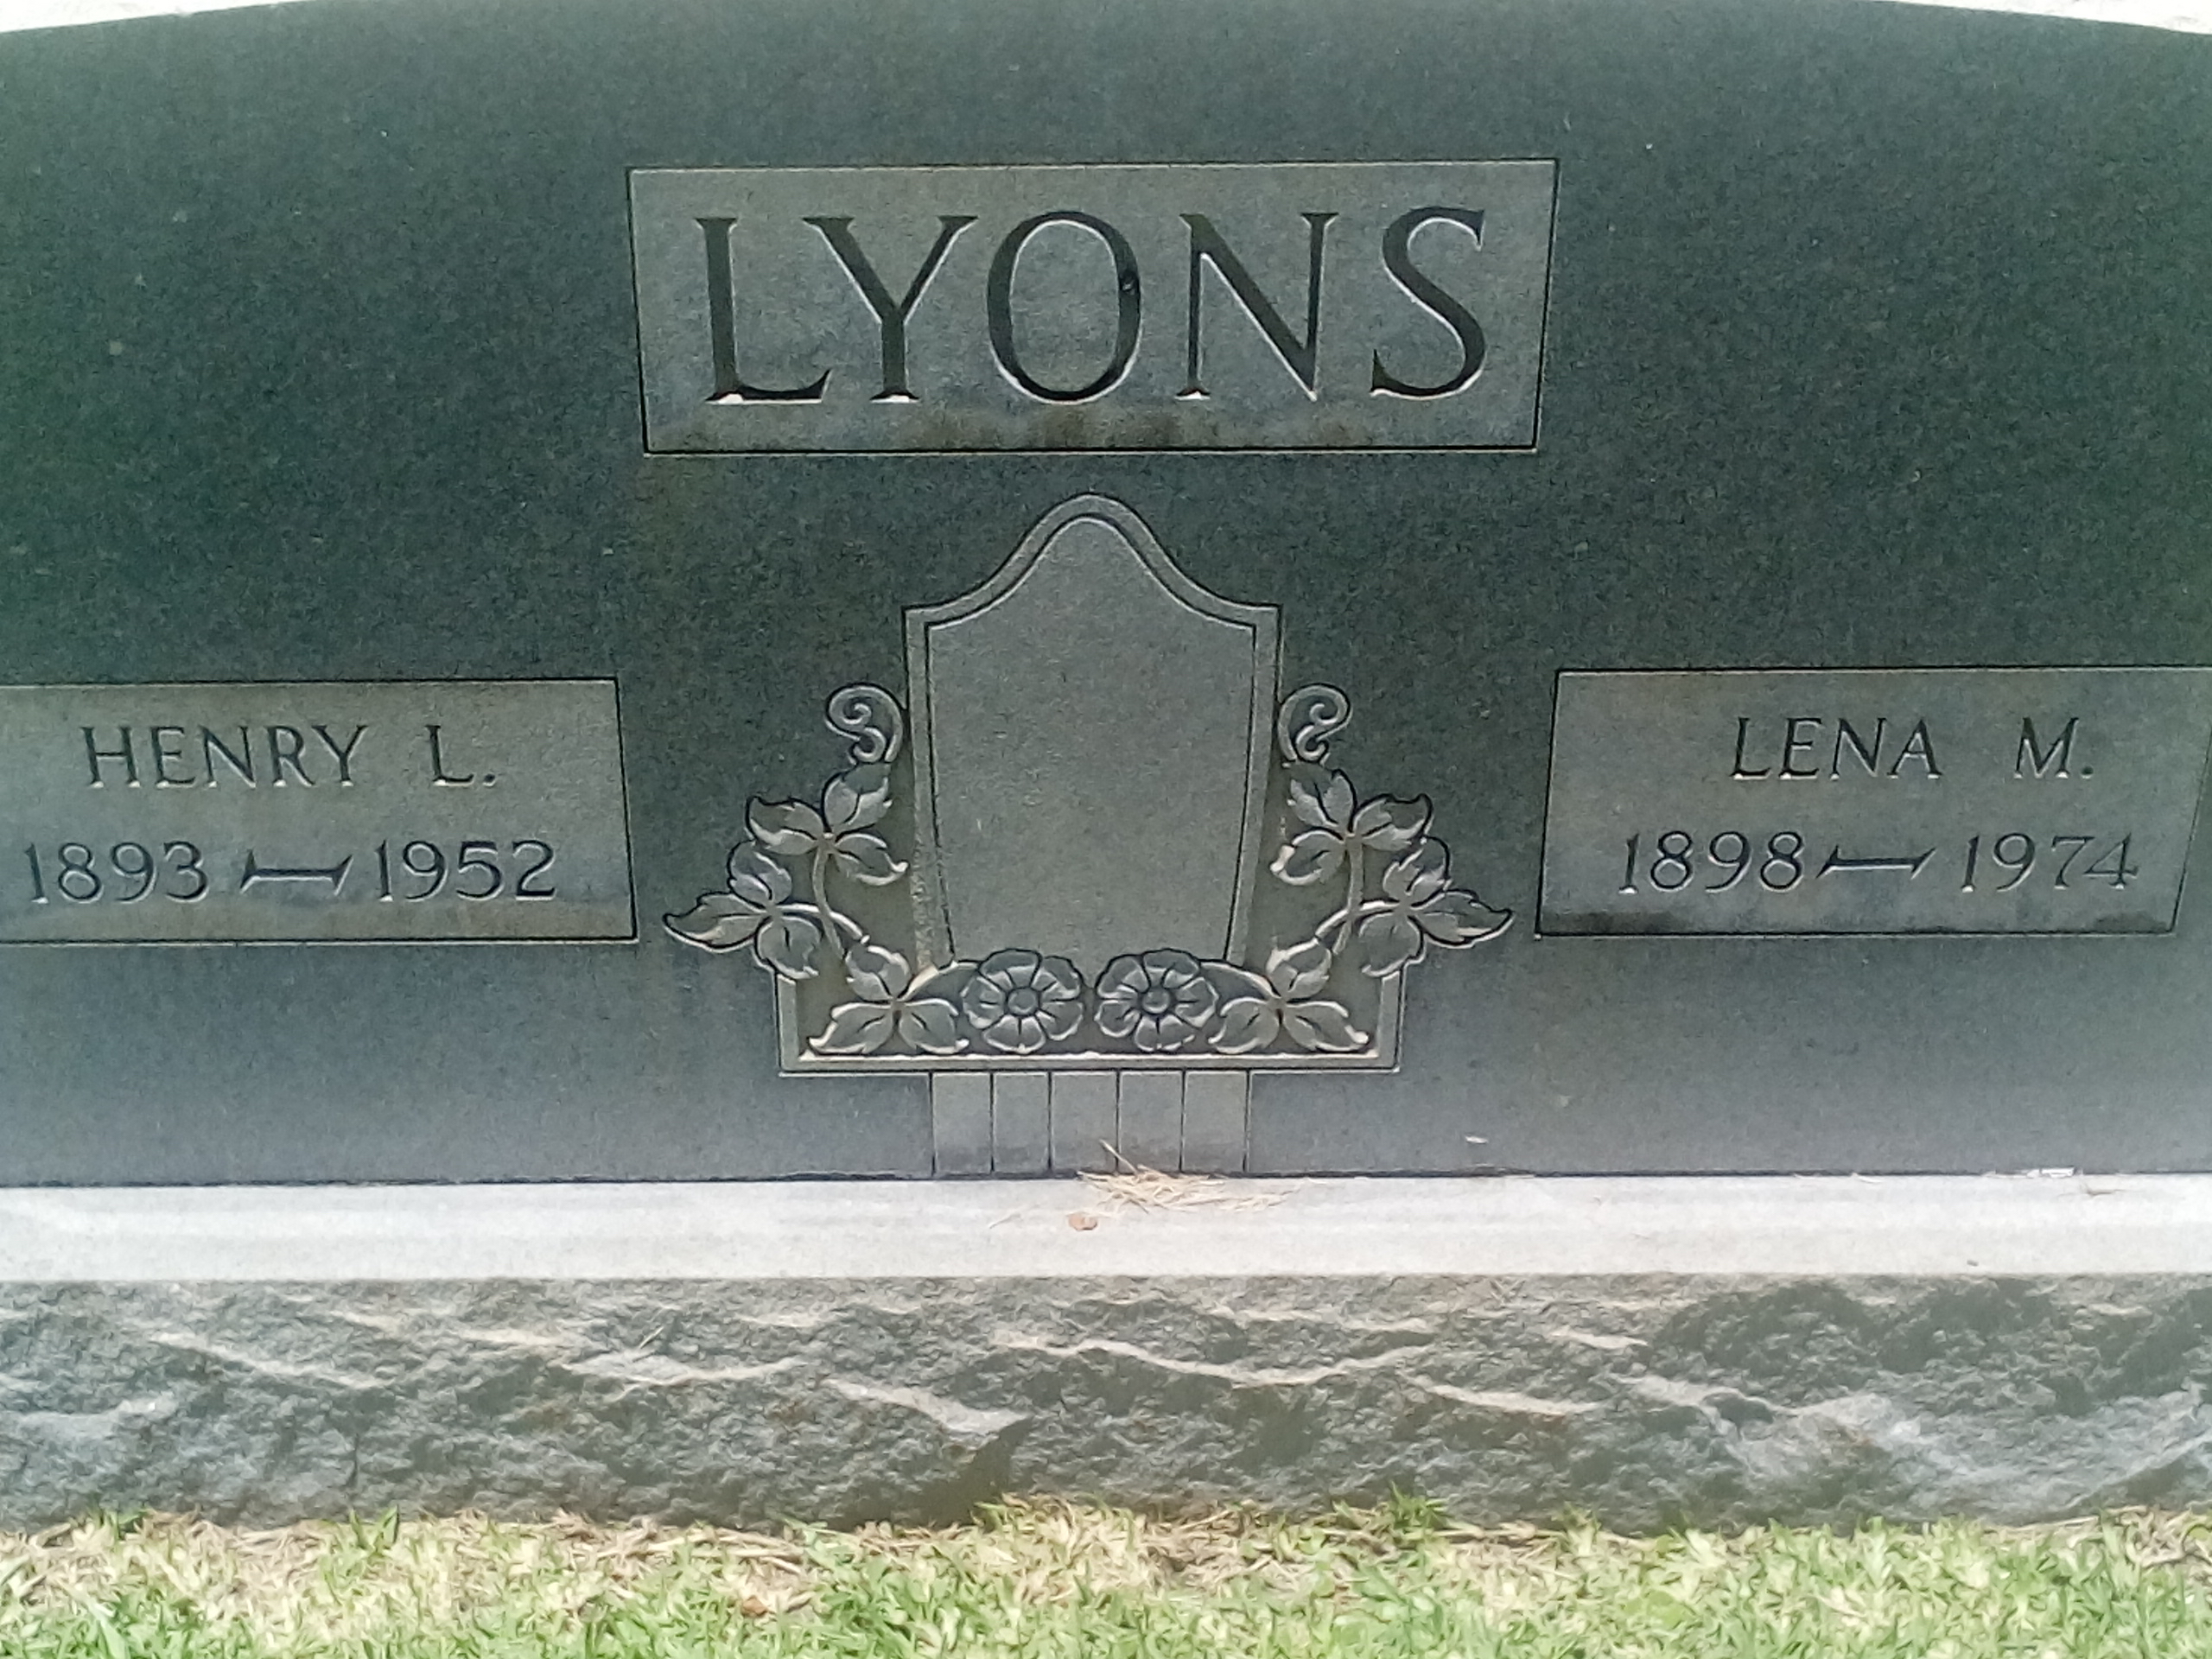 Henry L Lyons